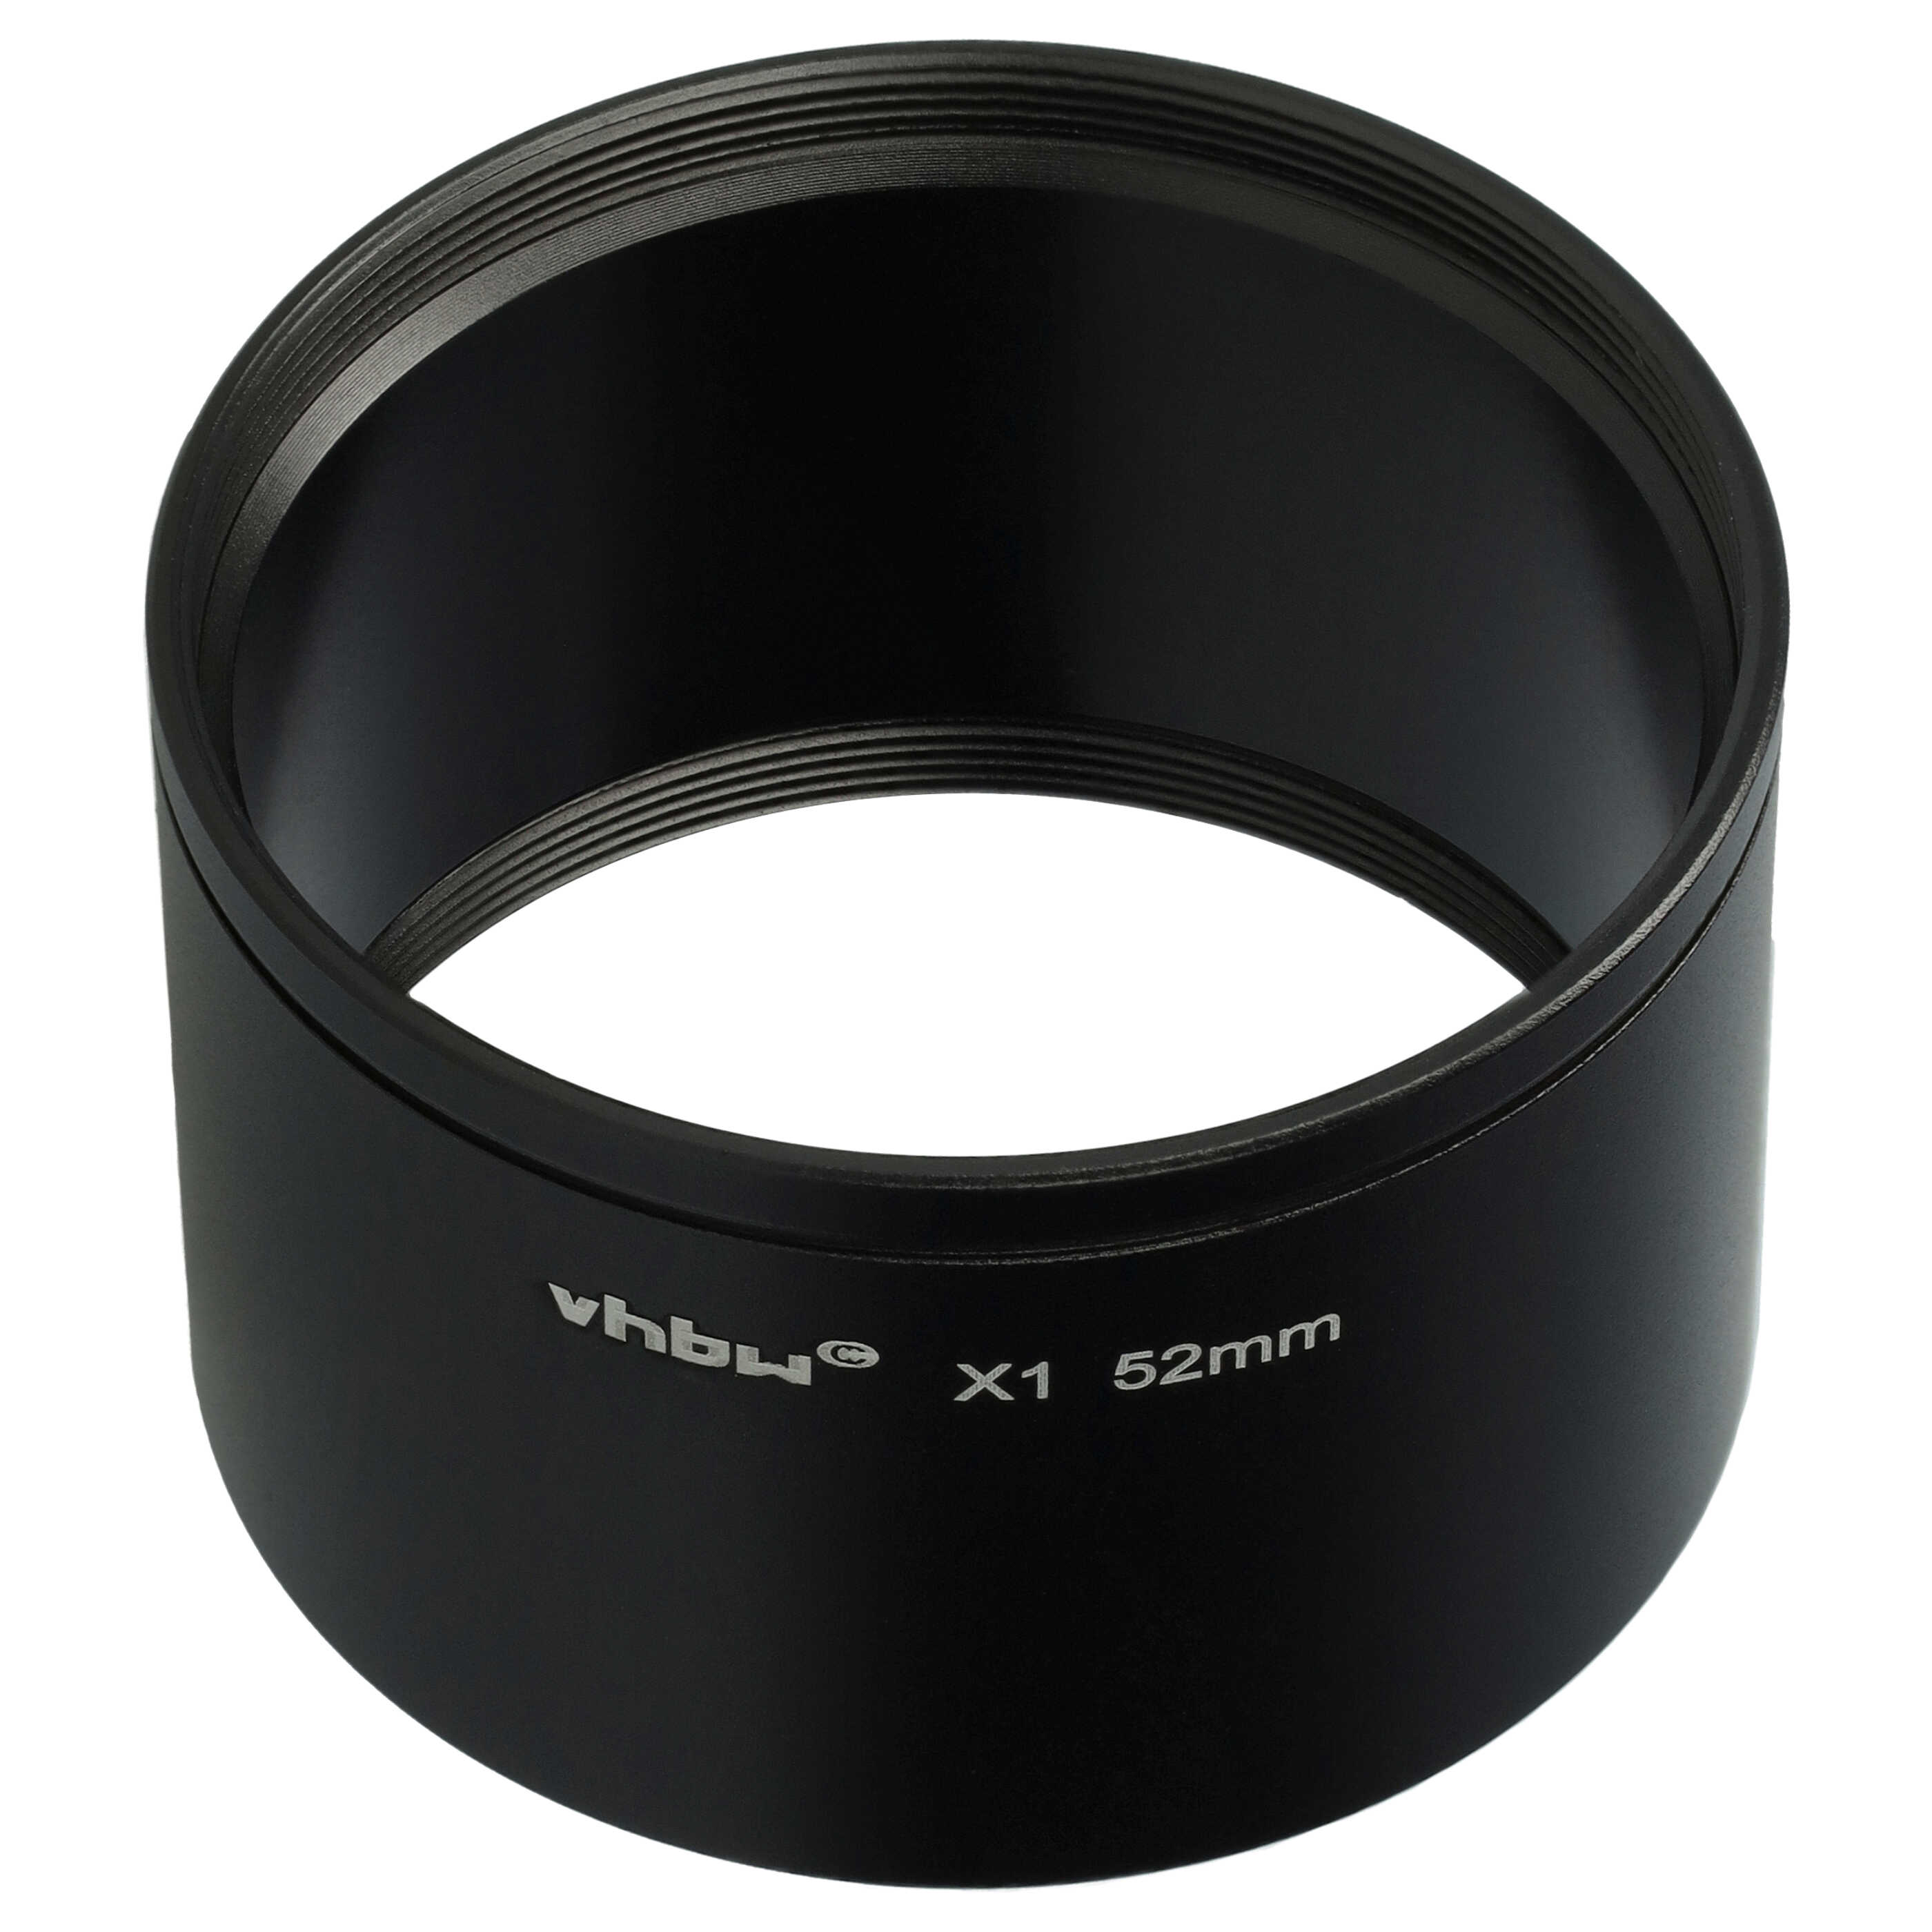 Adaptateur pour filtre 52 mm pour objectif photo Leica X1, X2